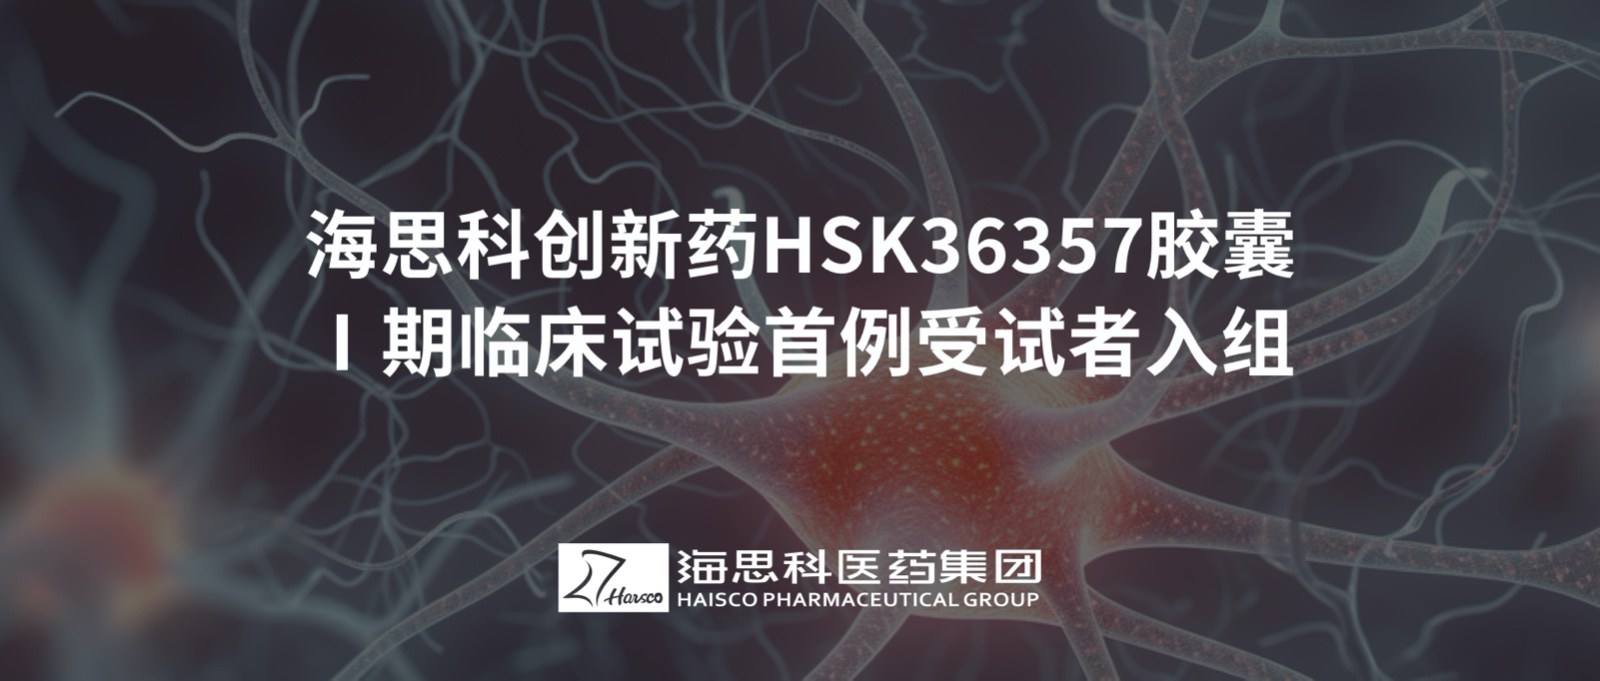 365体育中国官方网站创新药HSK36357胶囊Ⅰ期临床试验首例受试者入组